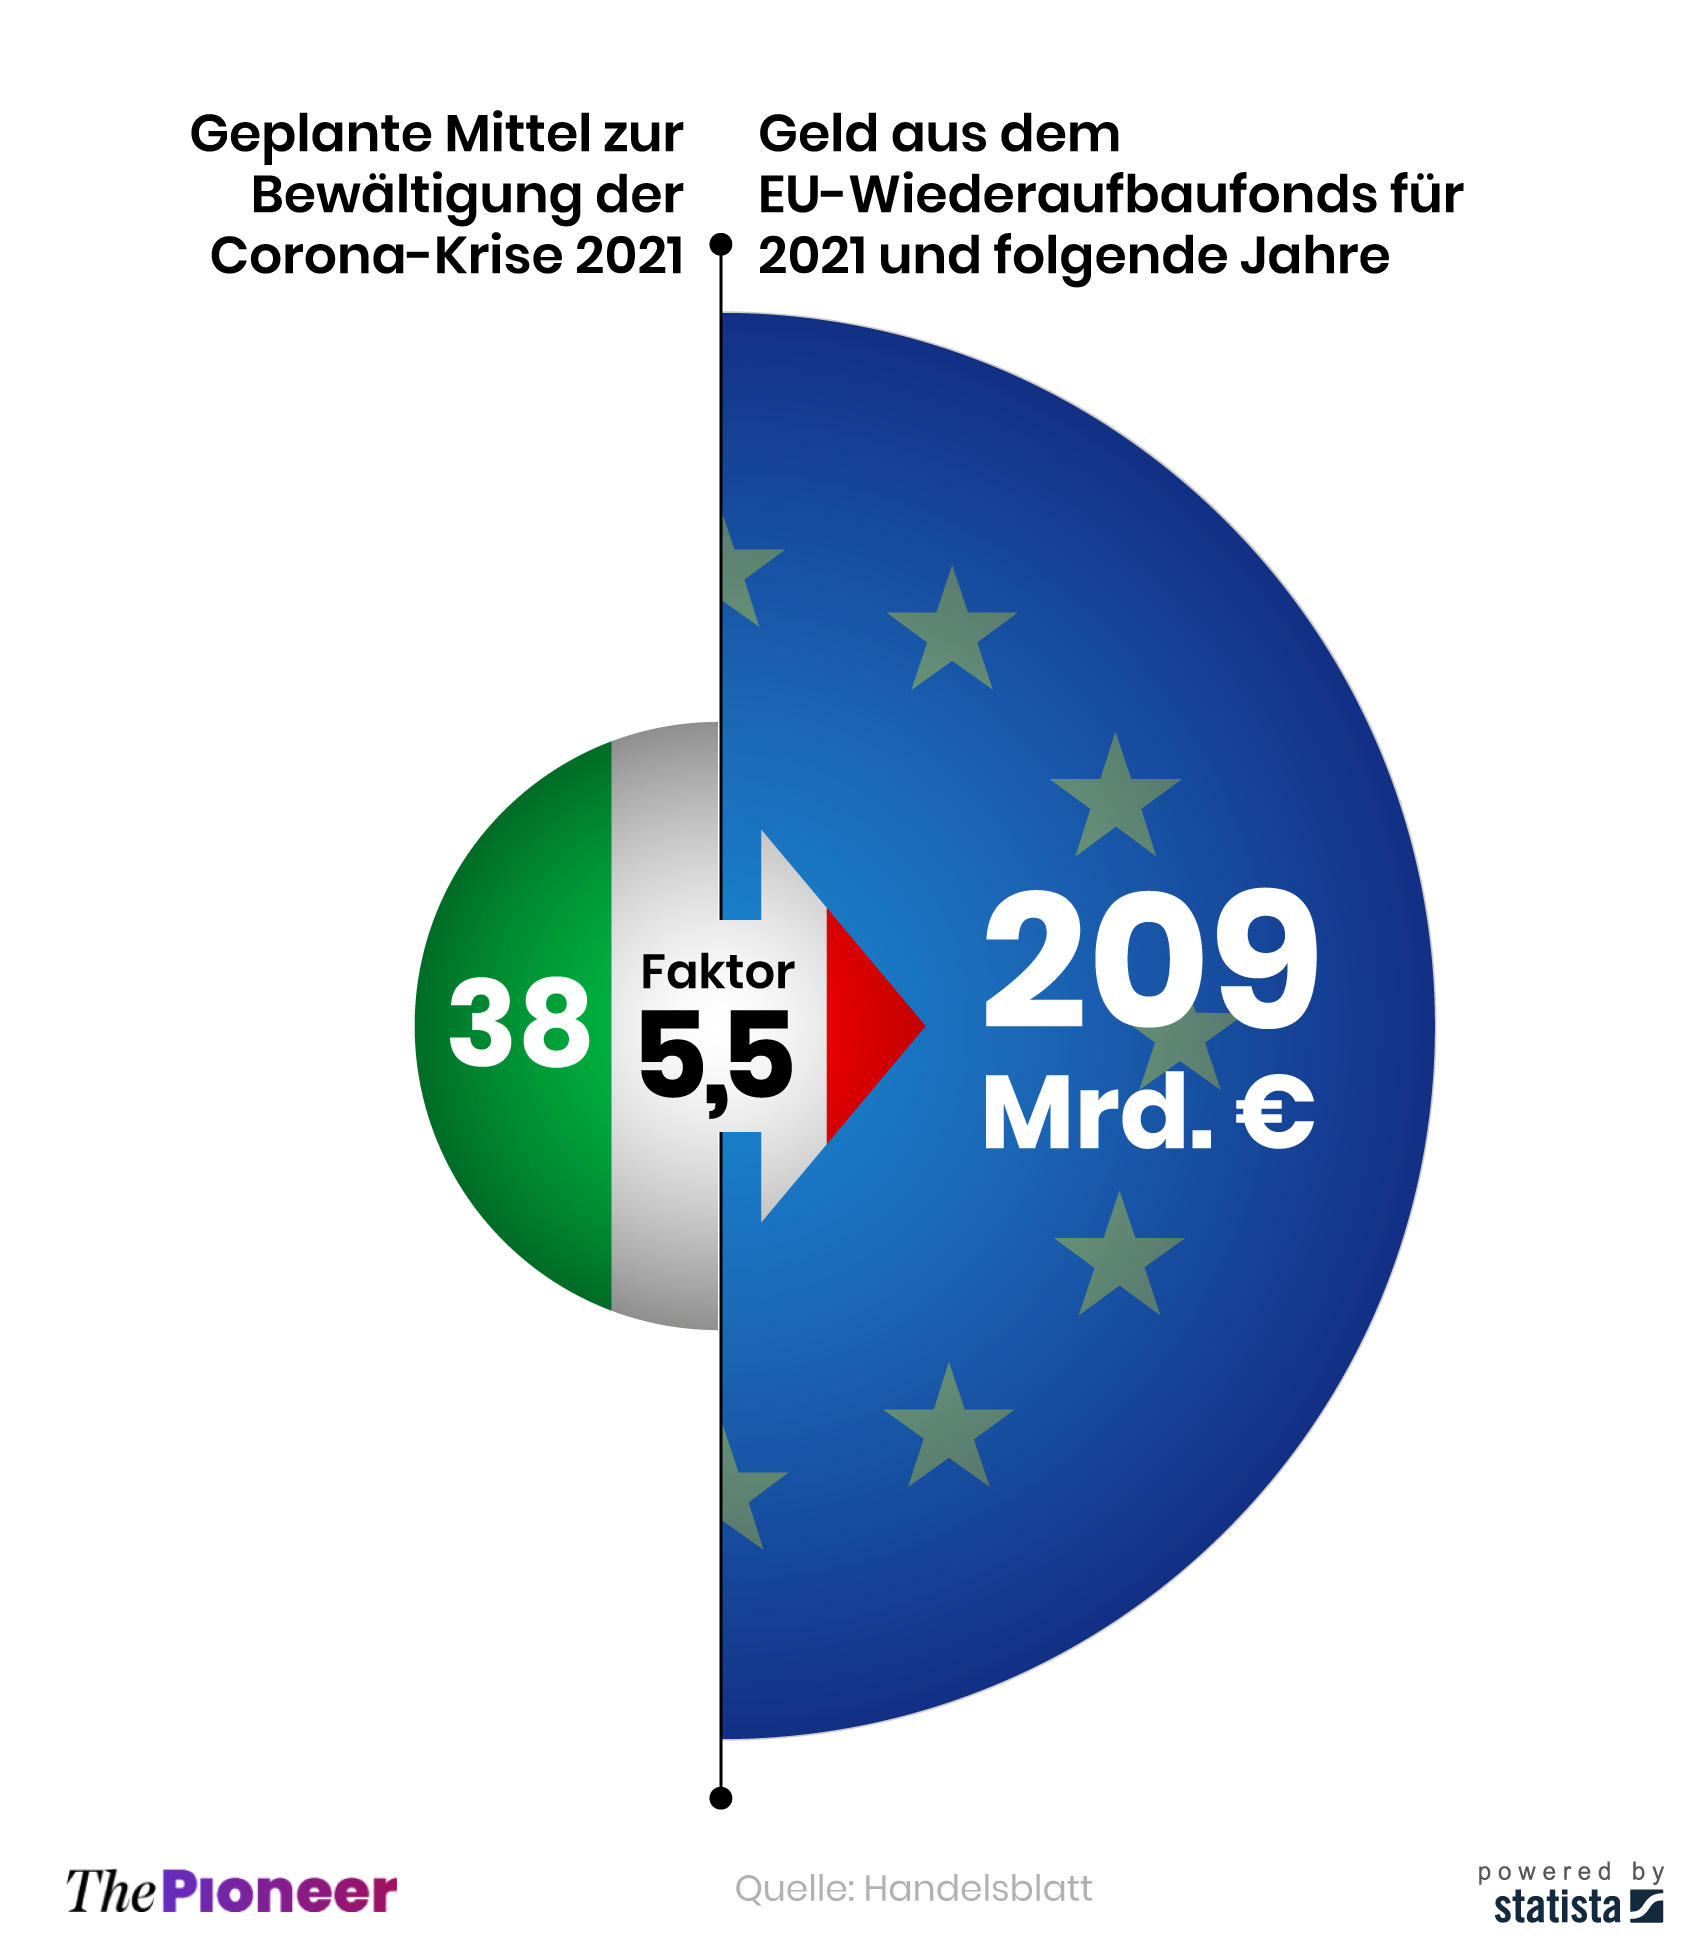 Geplante Ausgaben Italiens zur Finanzierung der Corona-Krise und EU-Gelder aus dem Wiederaufbaufond im Vergleich, in Milliarden Euro 